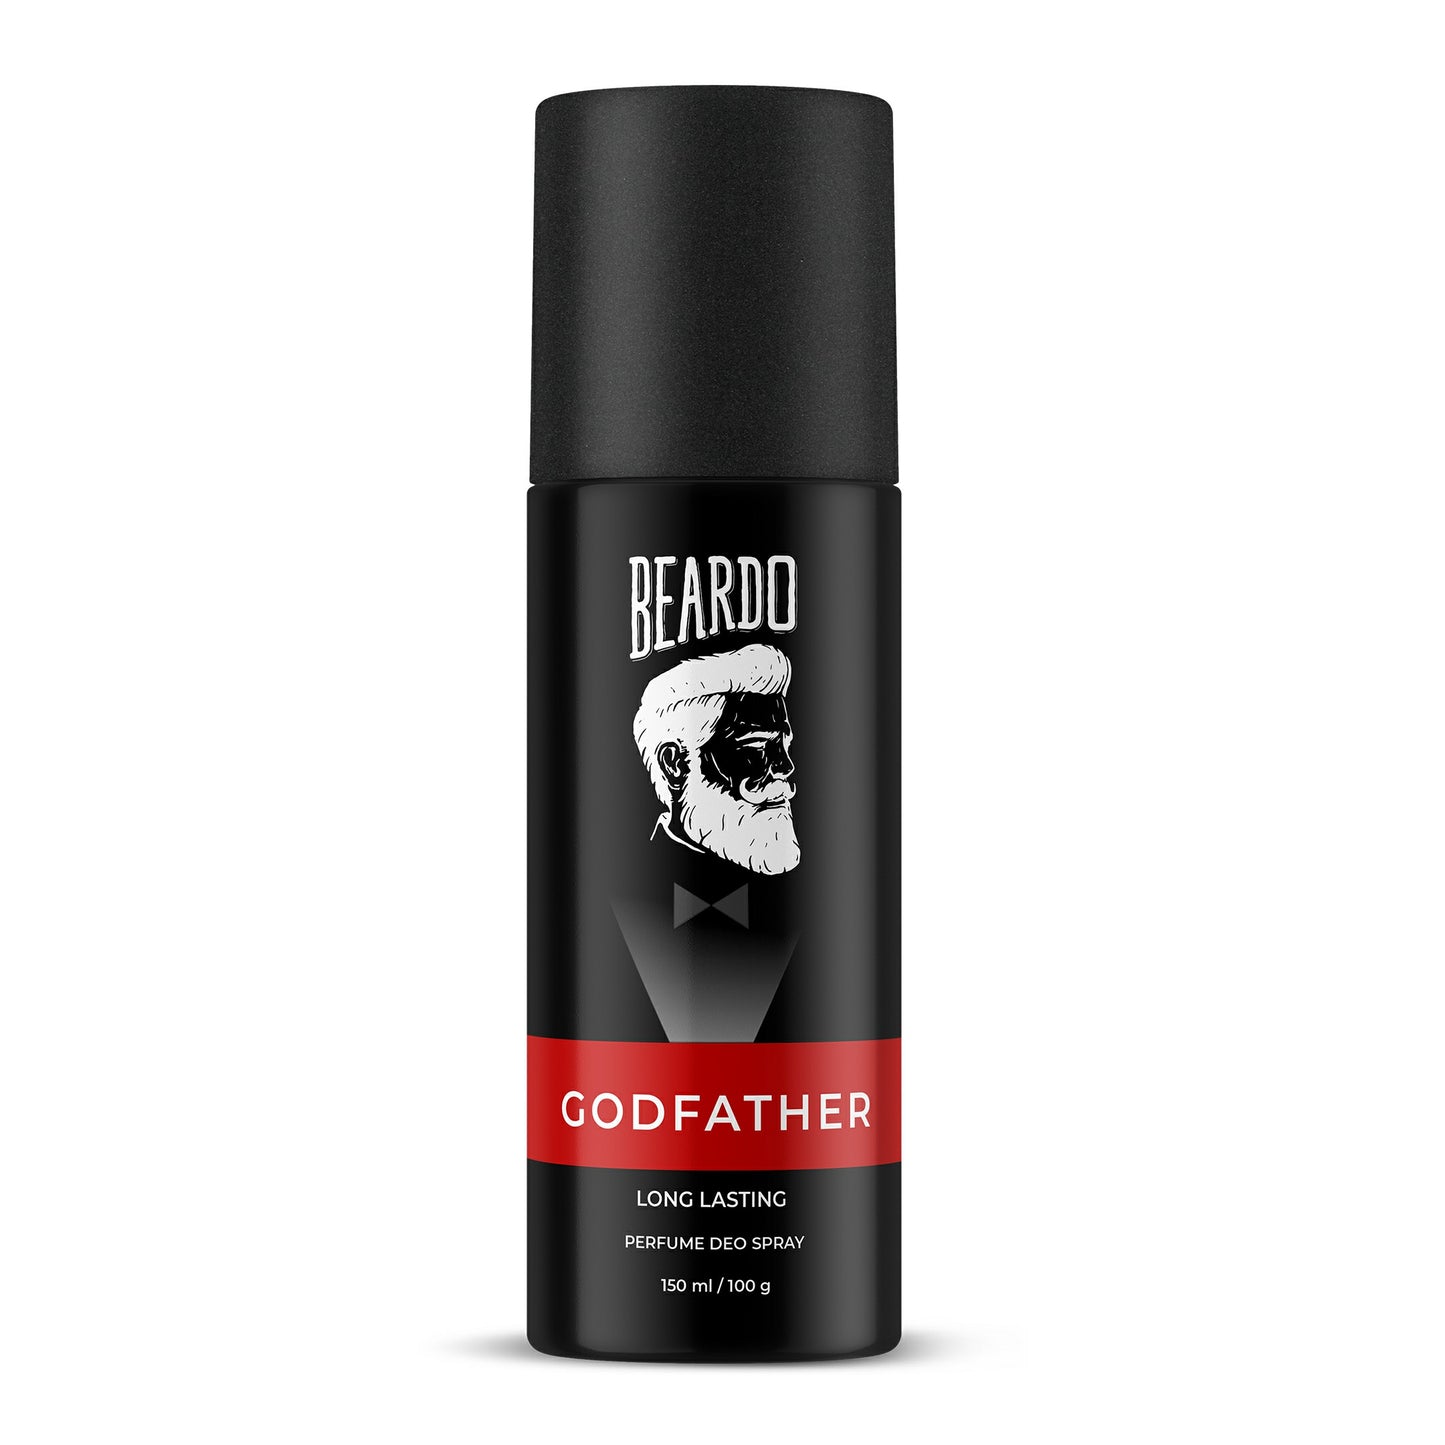 Beardo Godfather Perfume Deo Spray